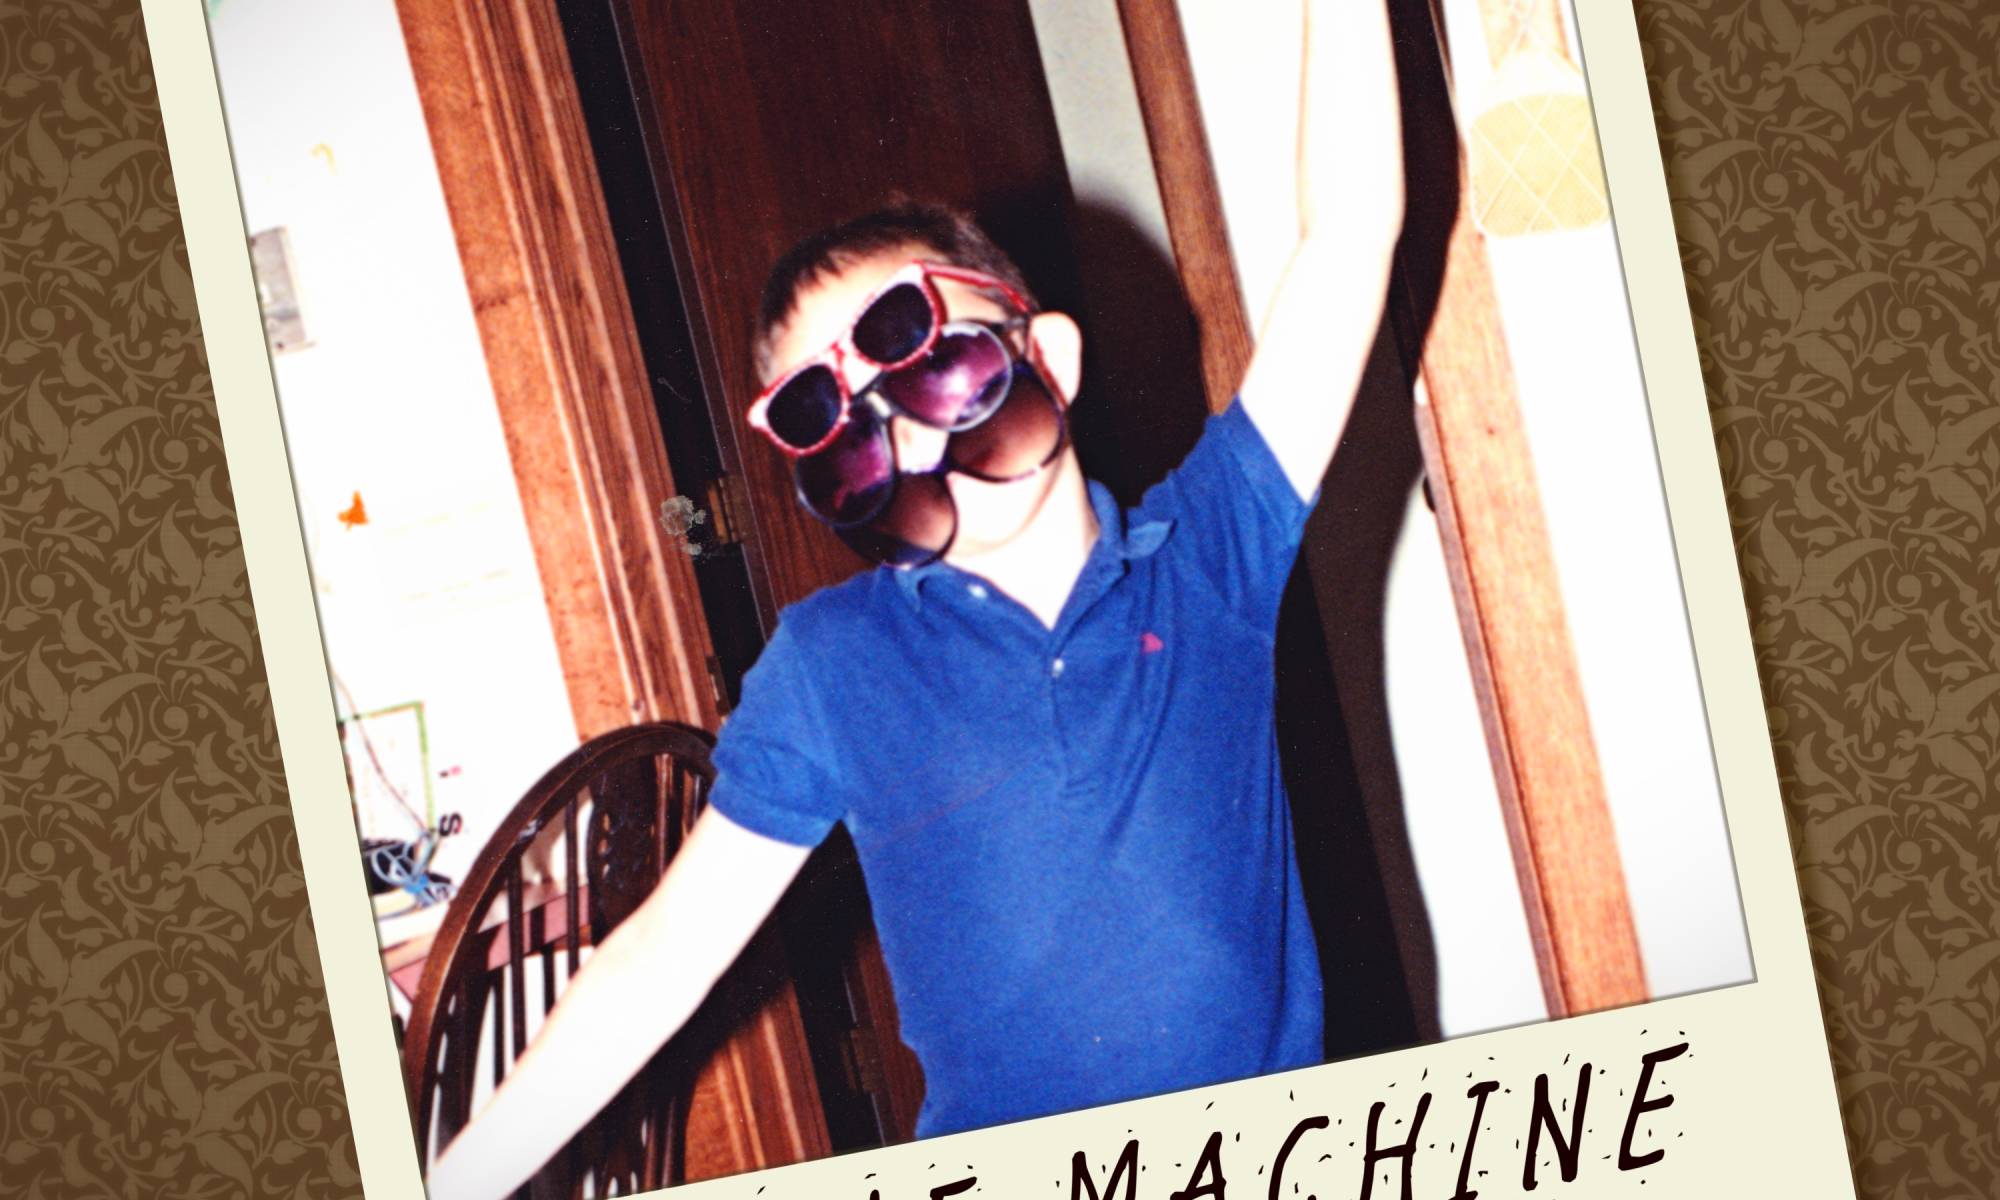 brave machine - we were just kids